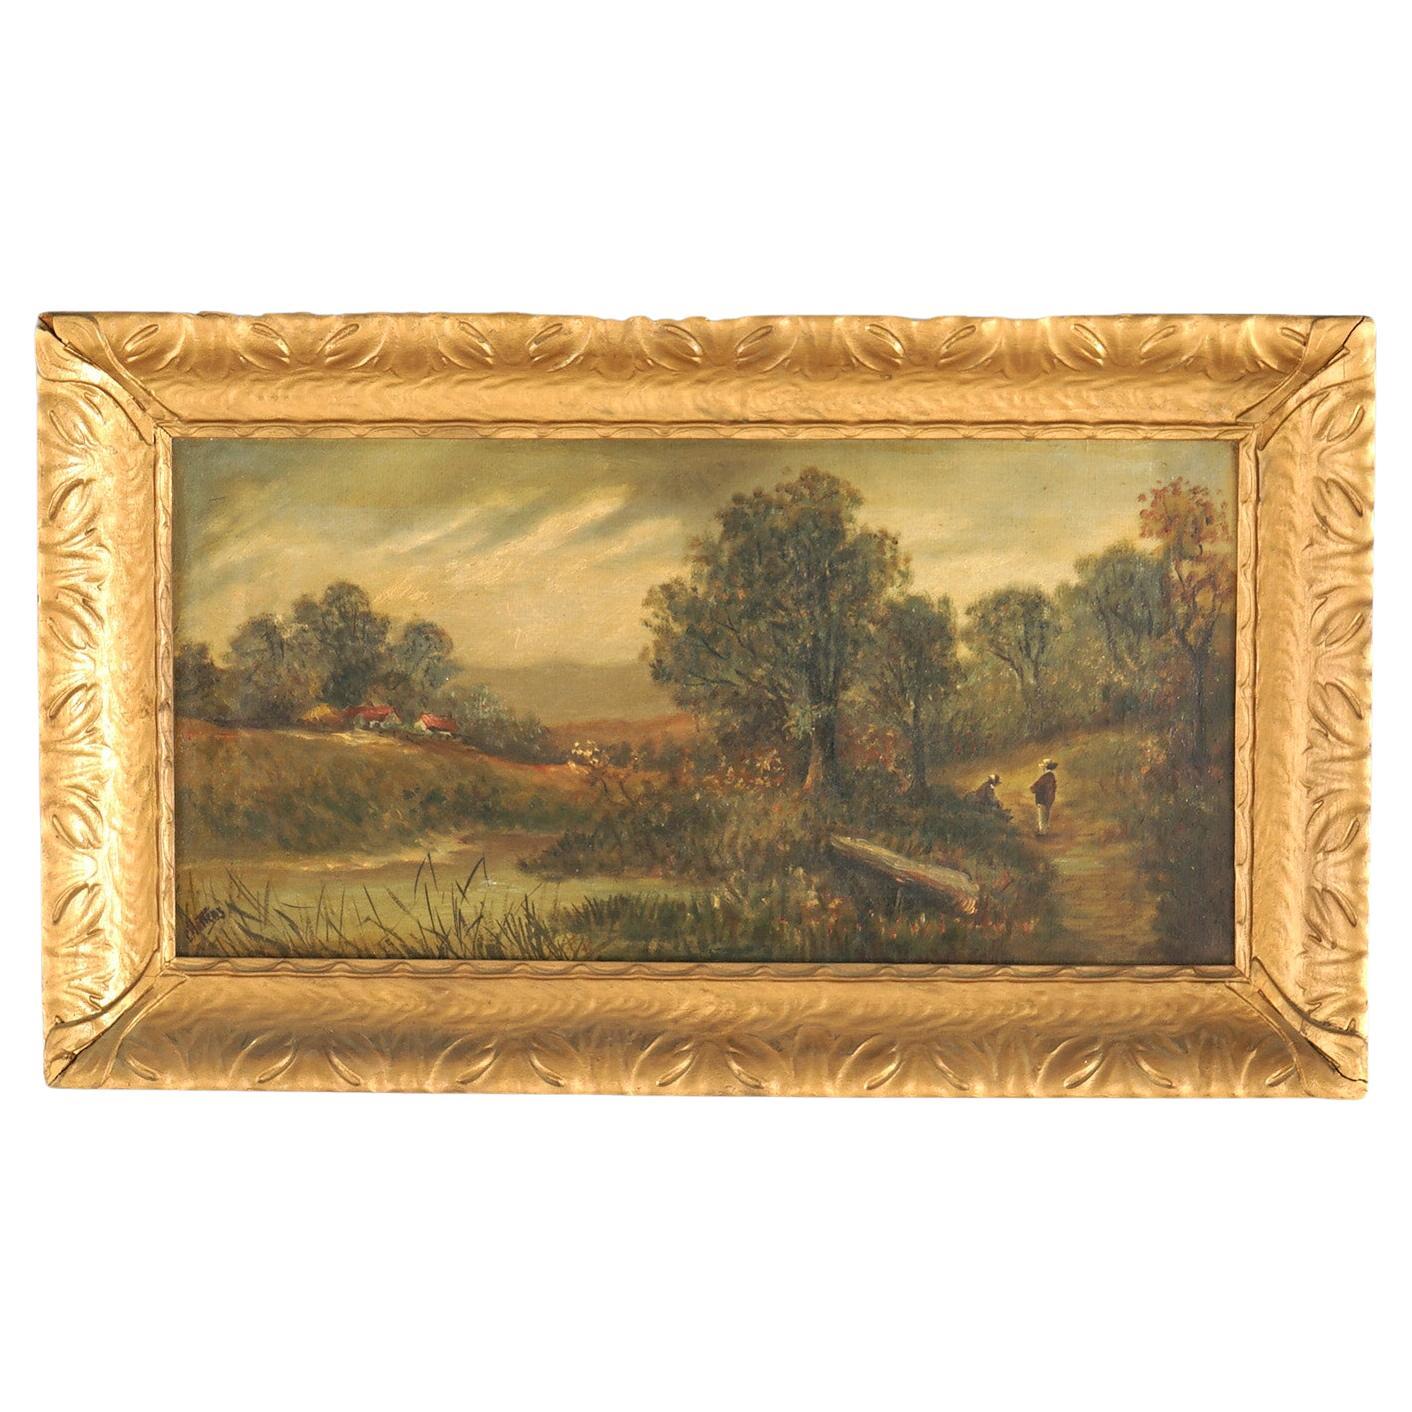 Chatten Oil on Canvas Landscape of Rural Village Scene, Framed, C1890 For Sale